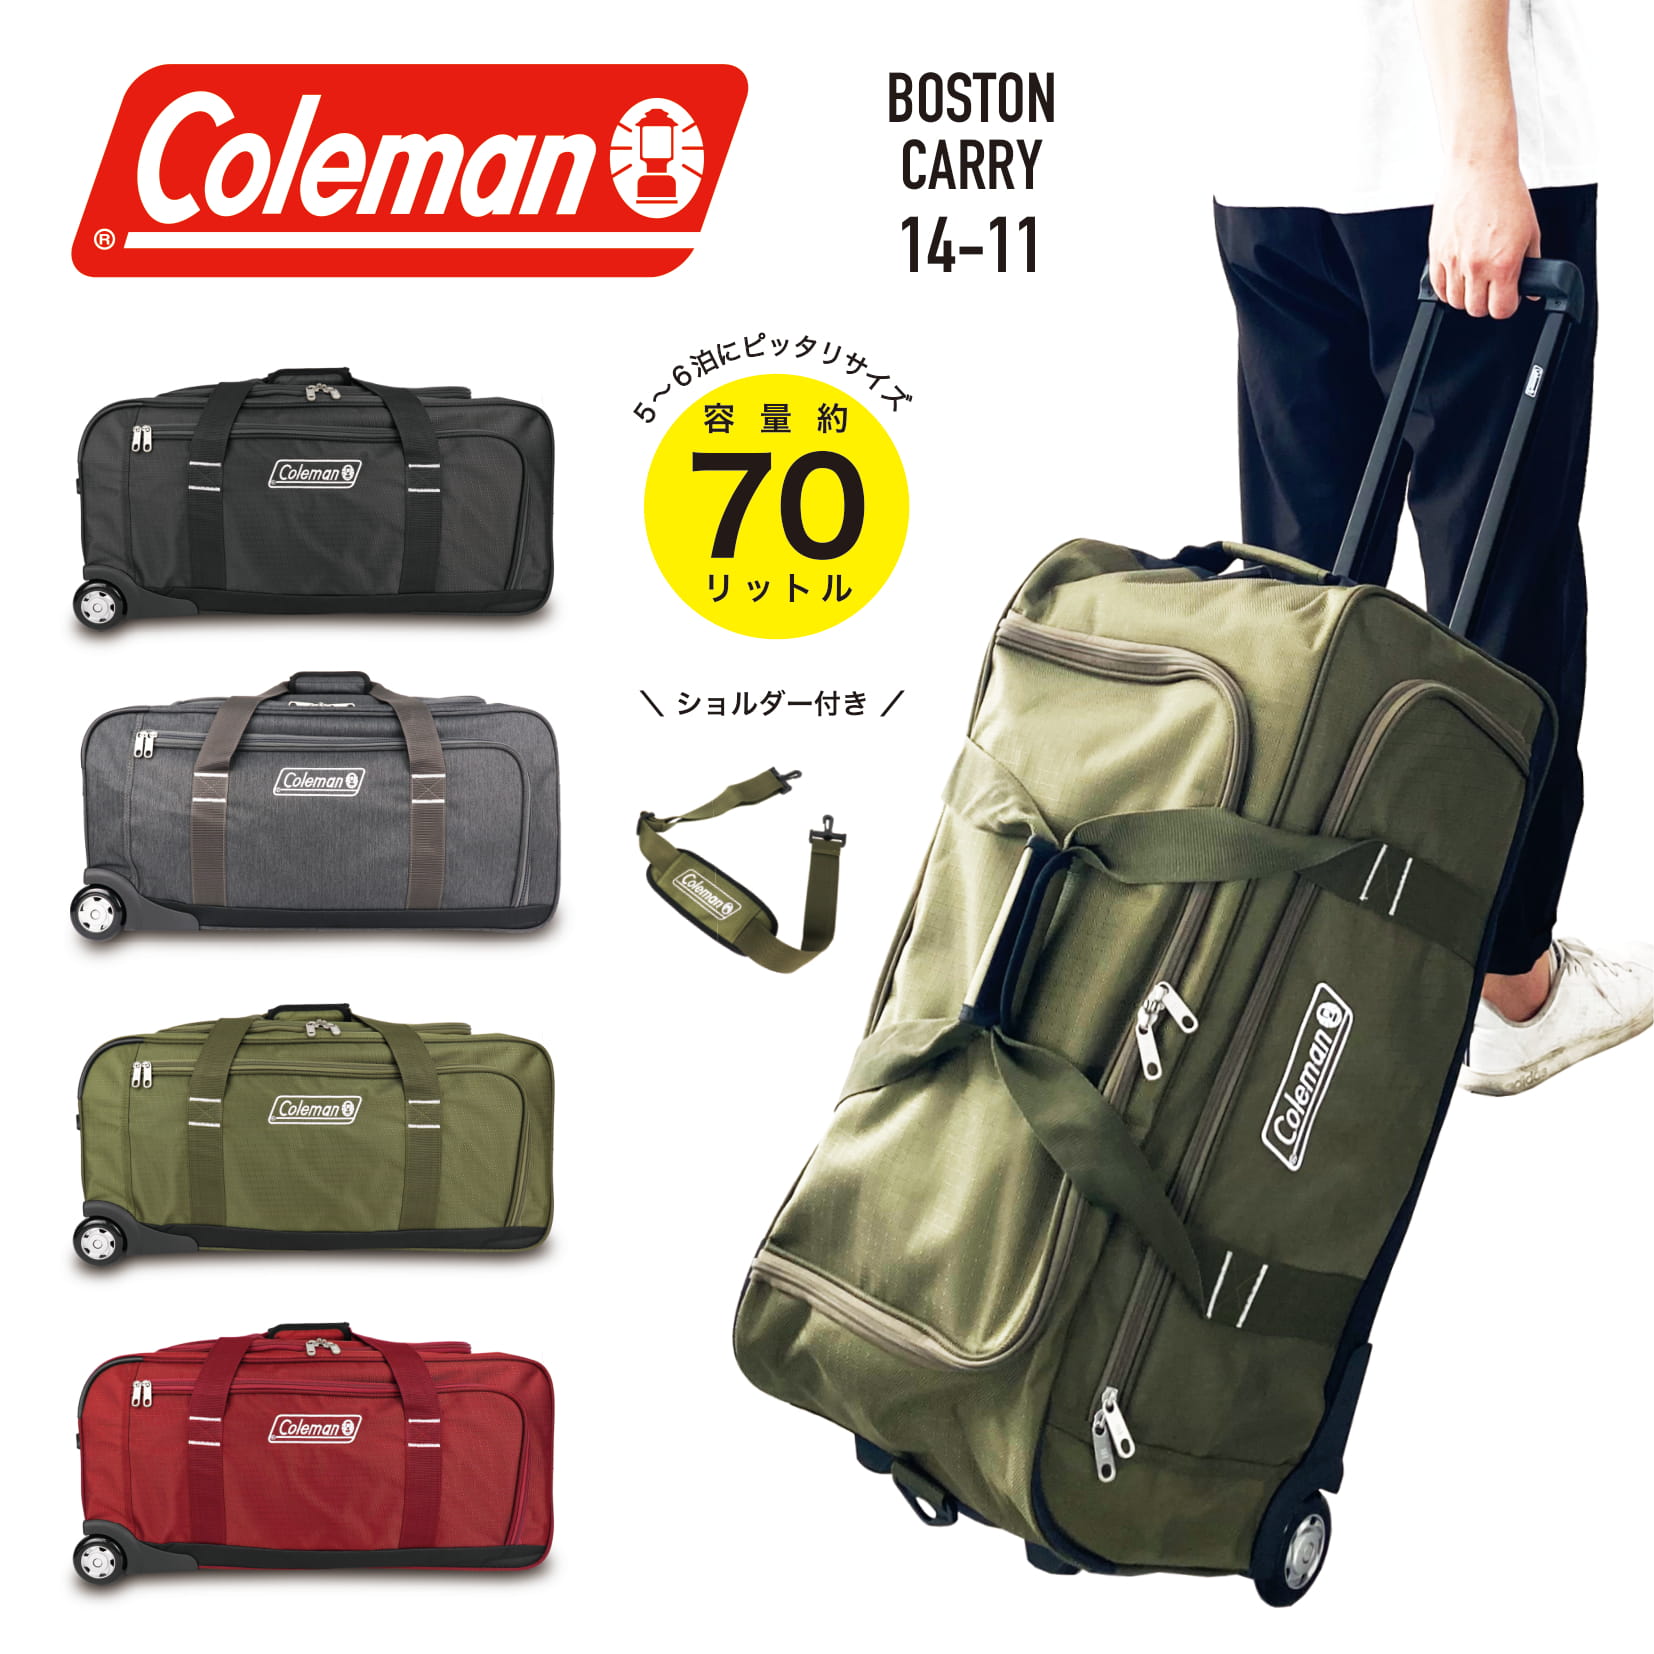 キャリーバッグ コールマン キャリーケース スーツケースの人気商品 